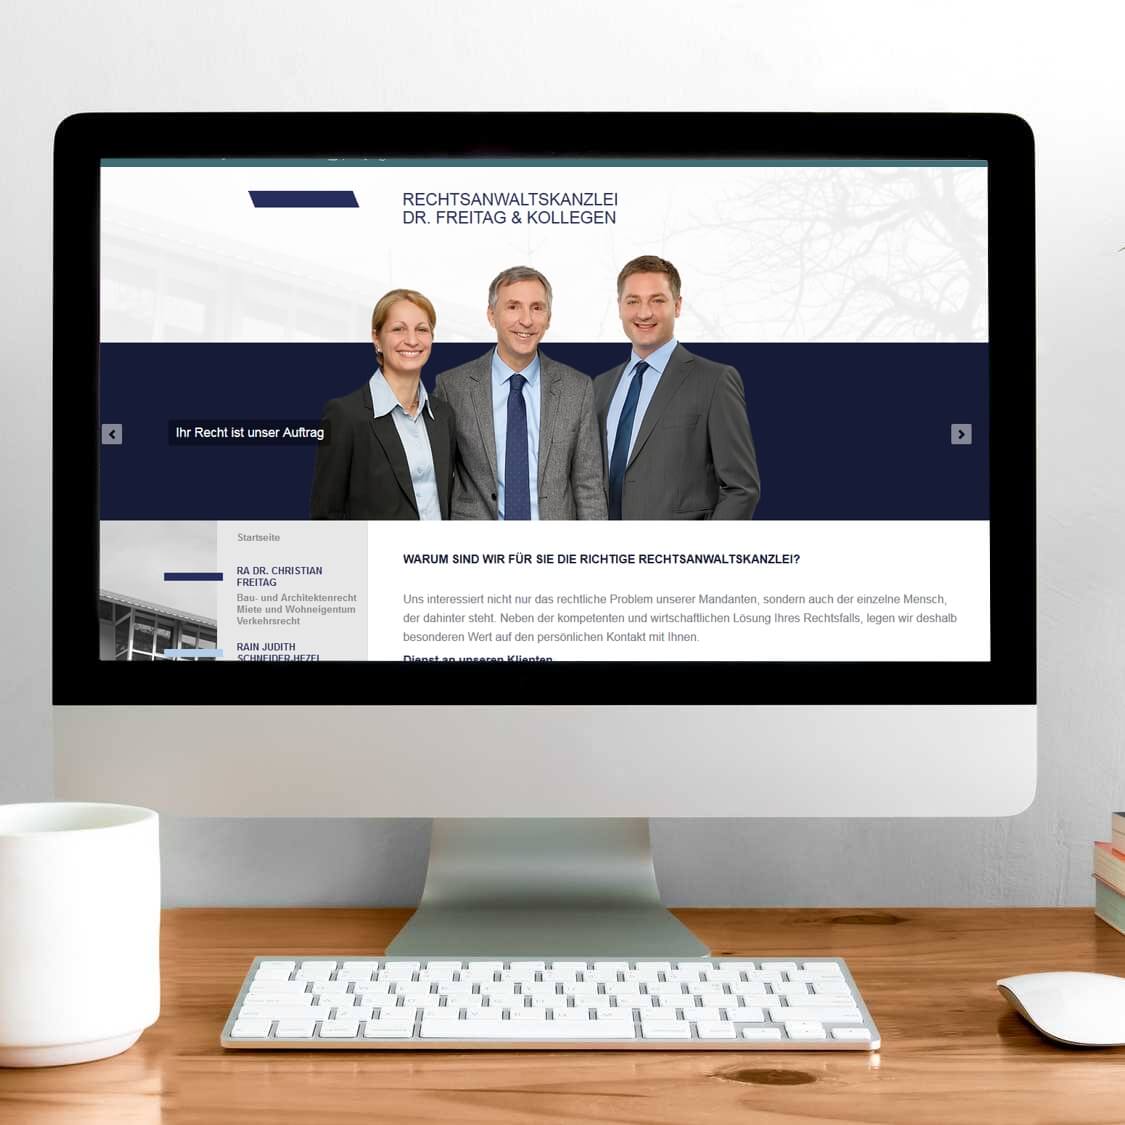 Abbildung der Webseite Rechtsanwaltskanzlei Dr. Freitag Ludwigsburg